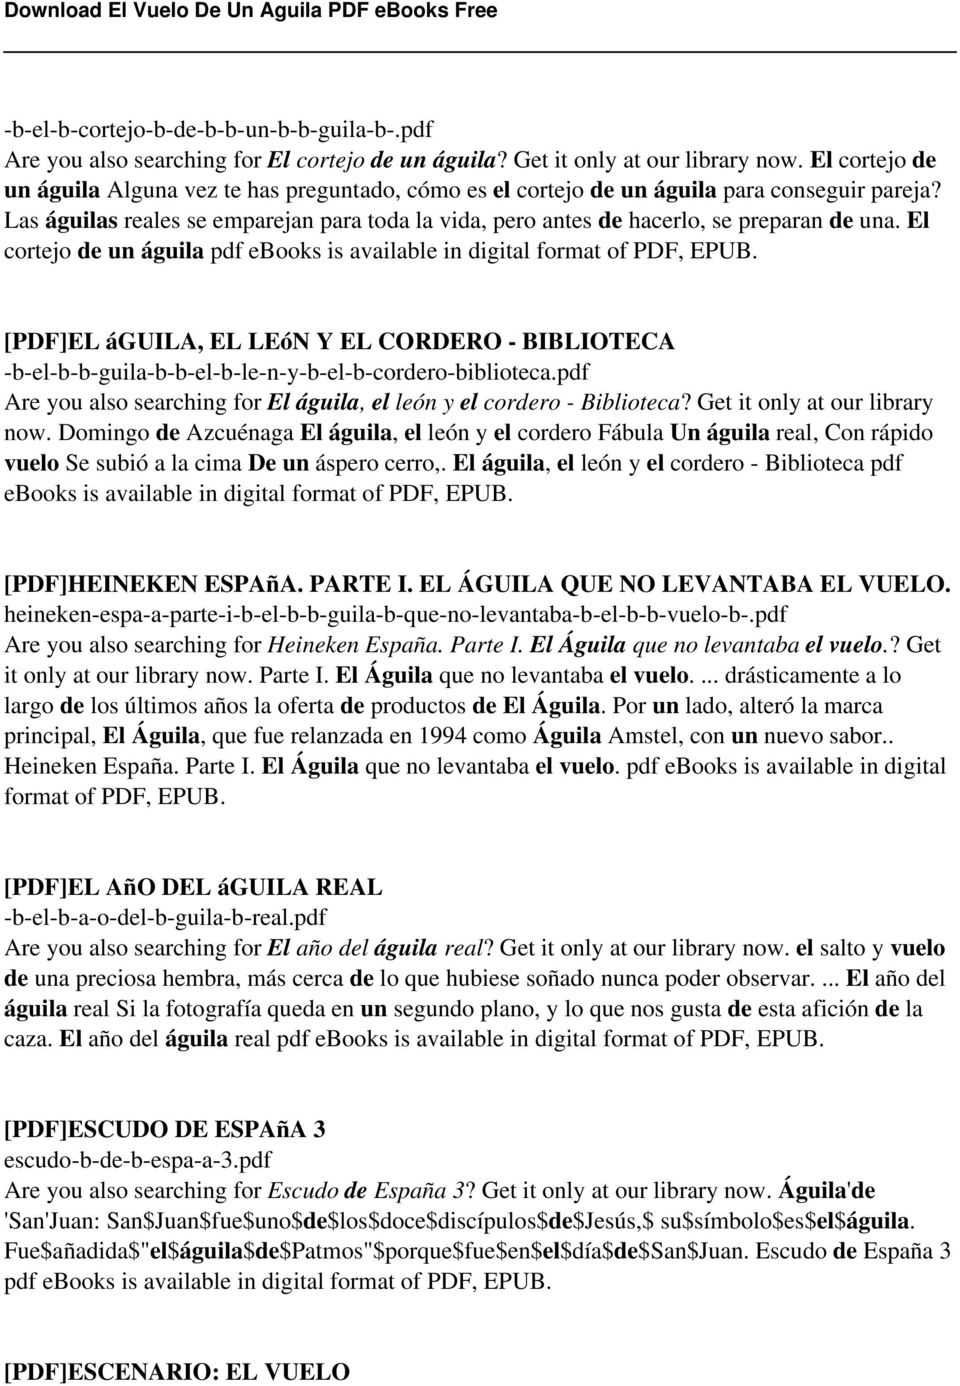 El Vuelo De Un Aguila PDF - PDF Descargar libre